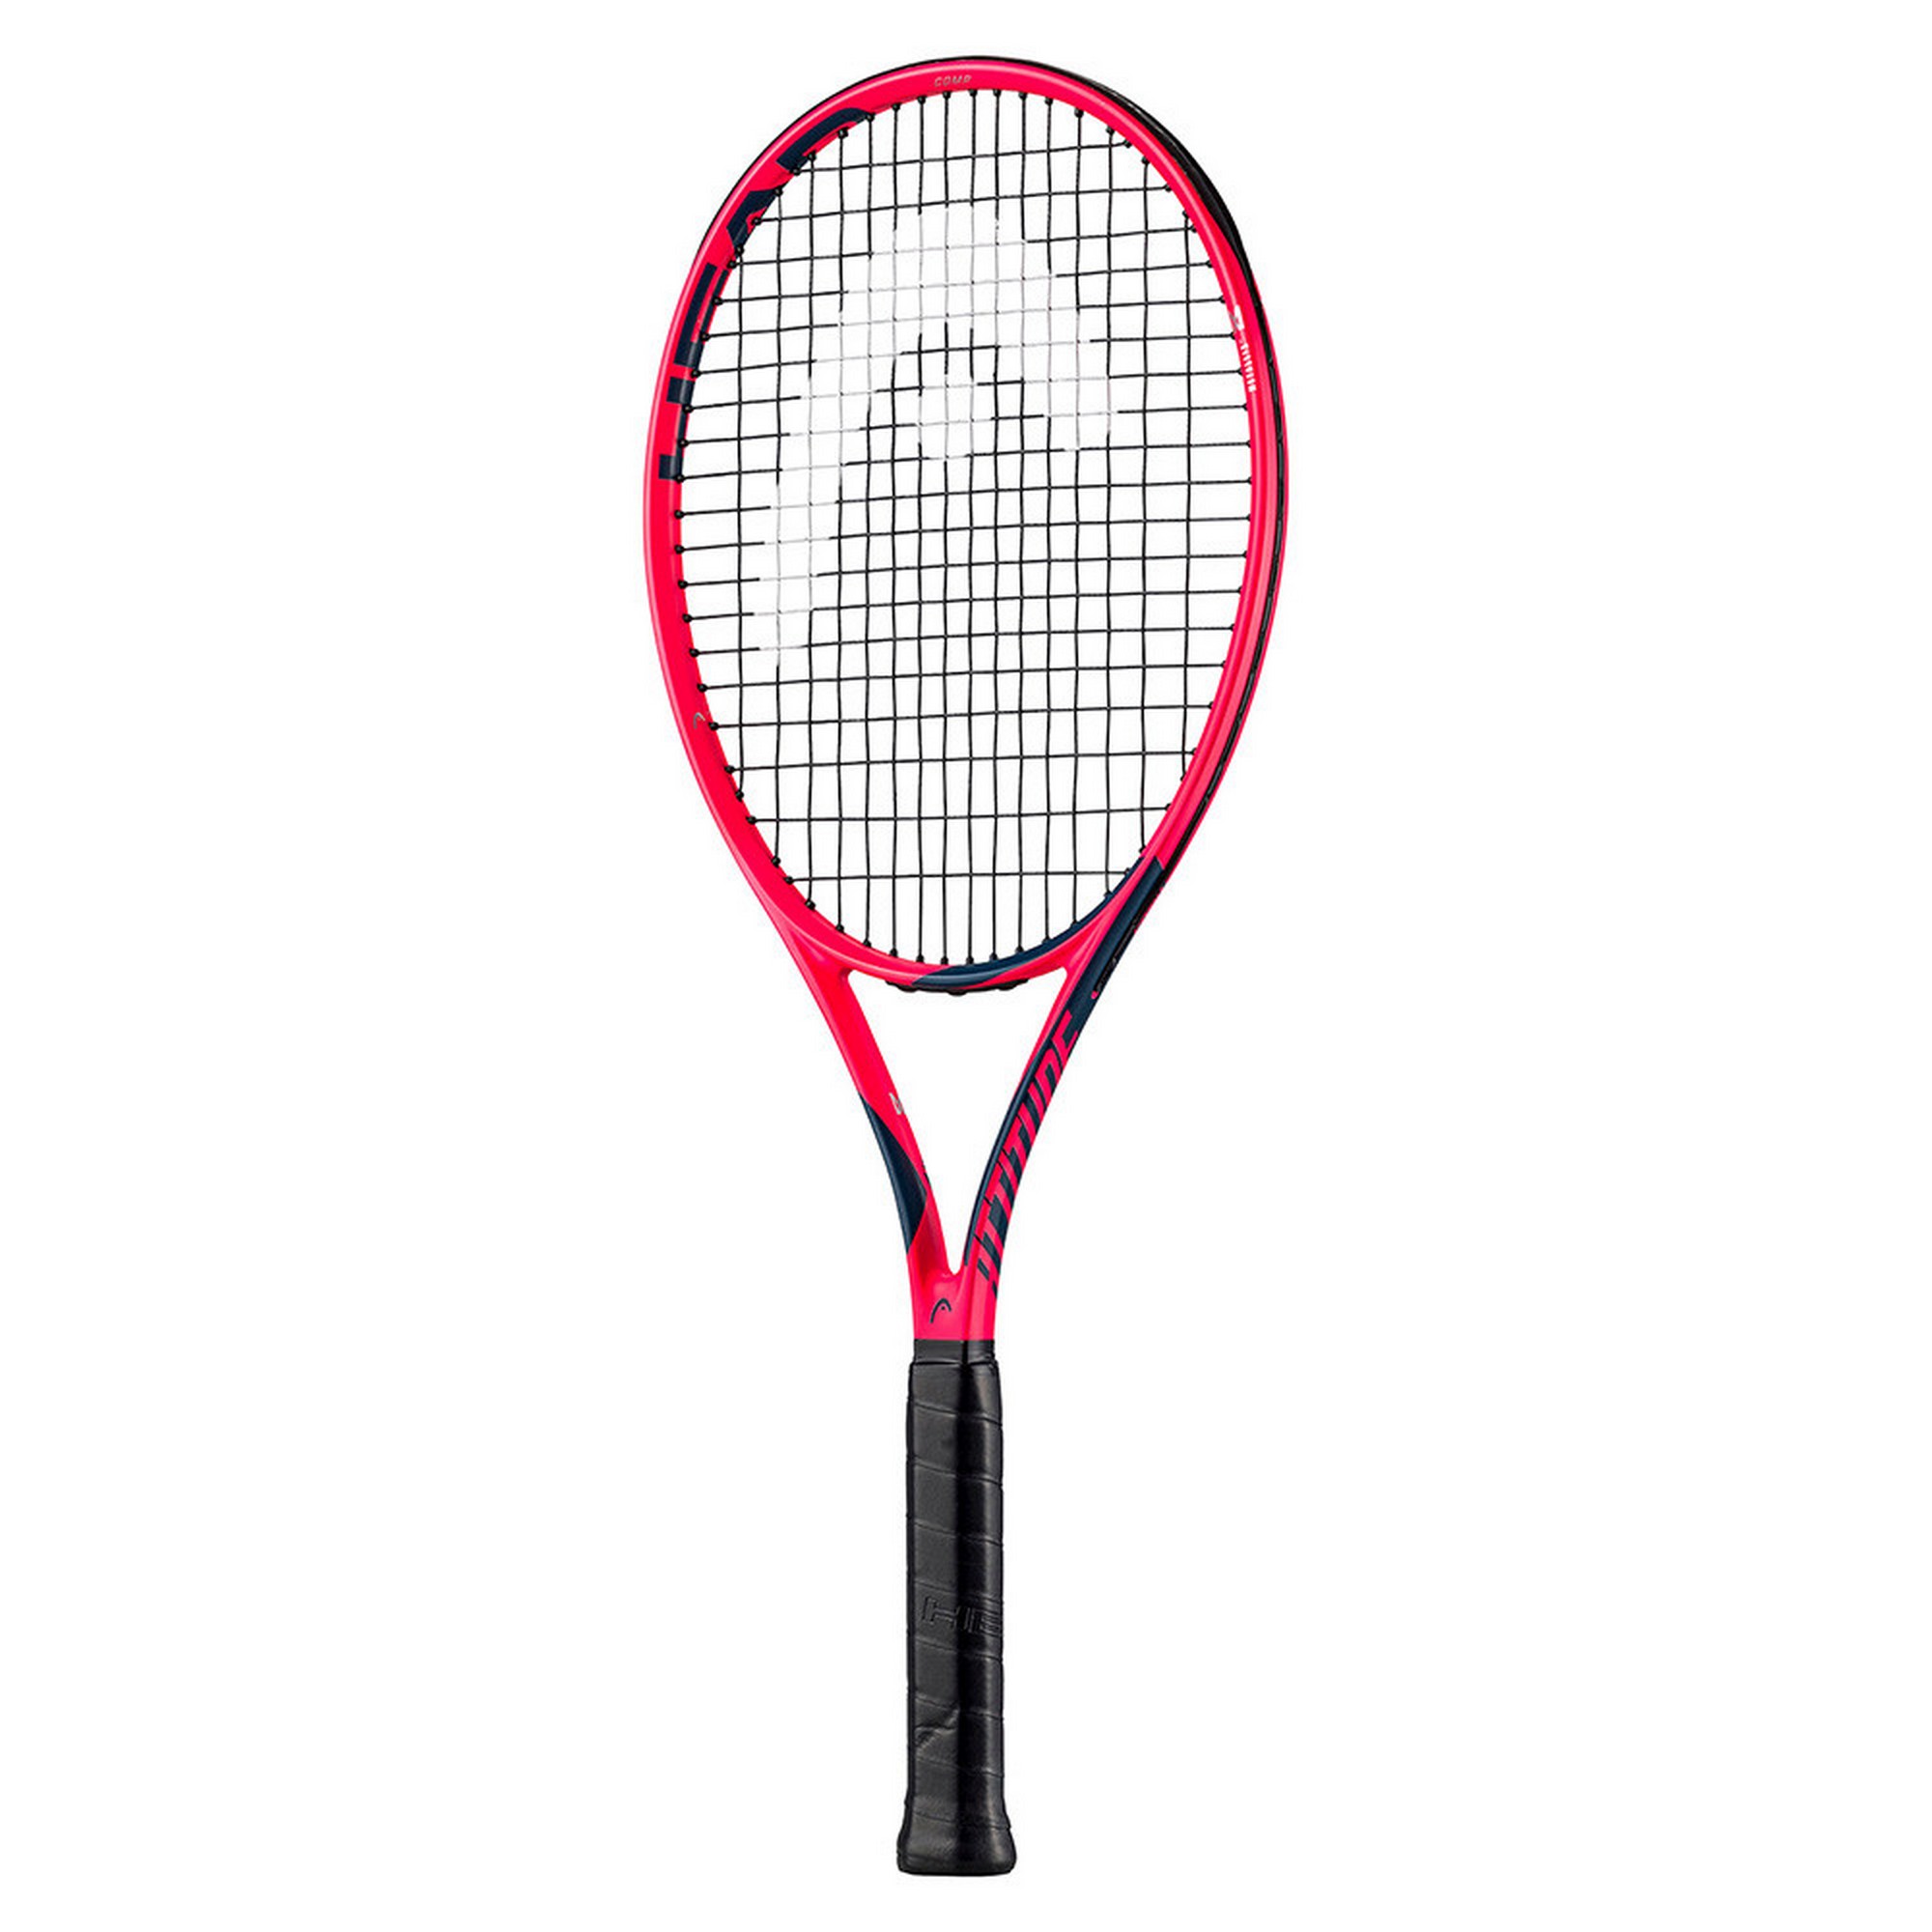 Ракетка для большого тенниса Head MX Attitude Comp Gr2 234733 ярко-розовый